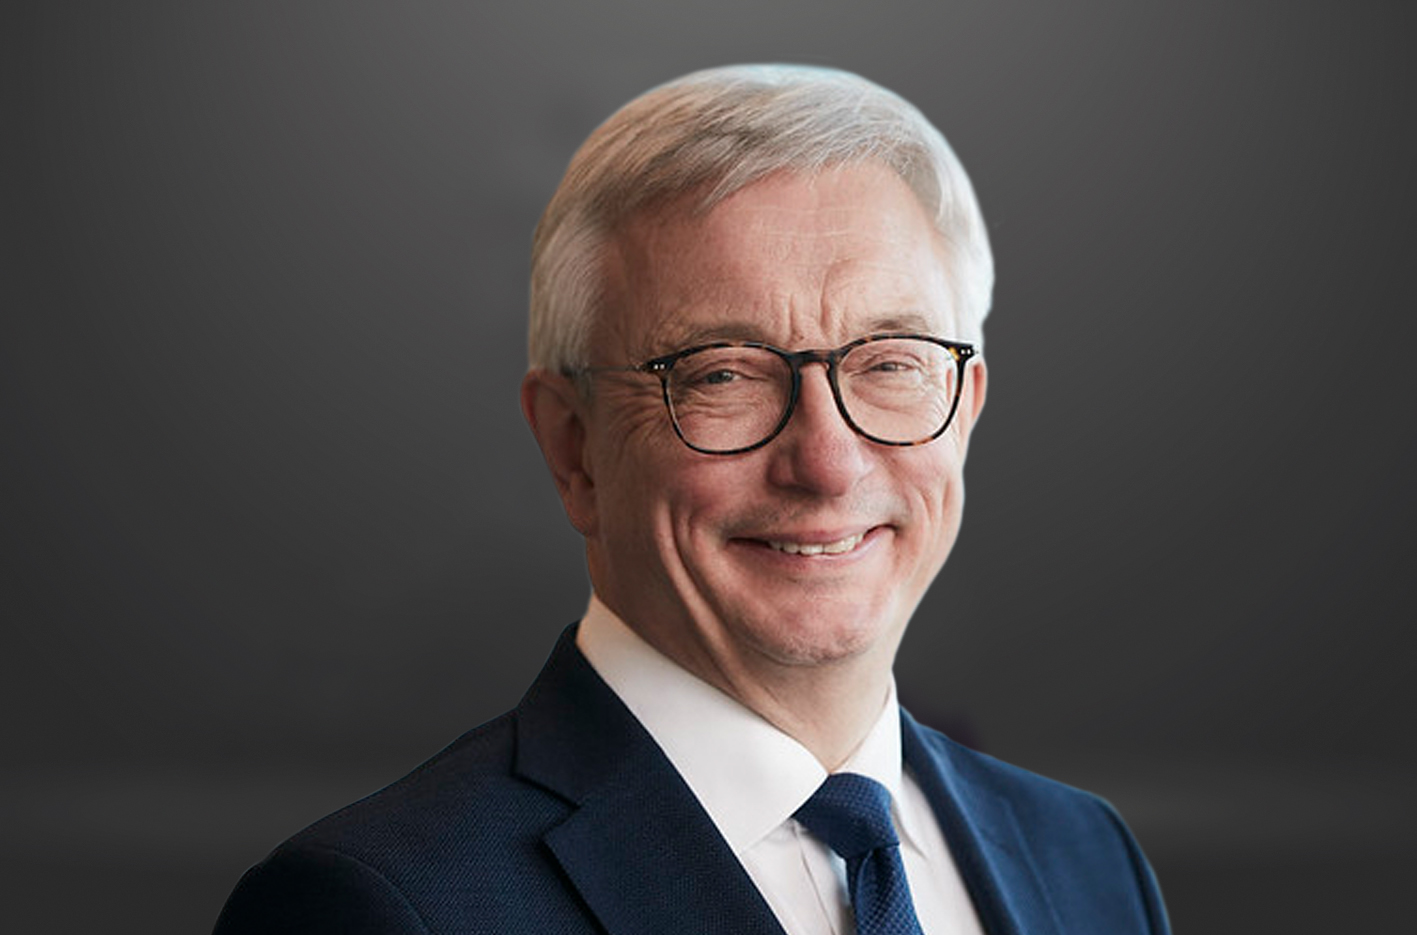 Karl Eirik Schjøtt-Pedersen, Chair of the IDI Board